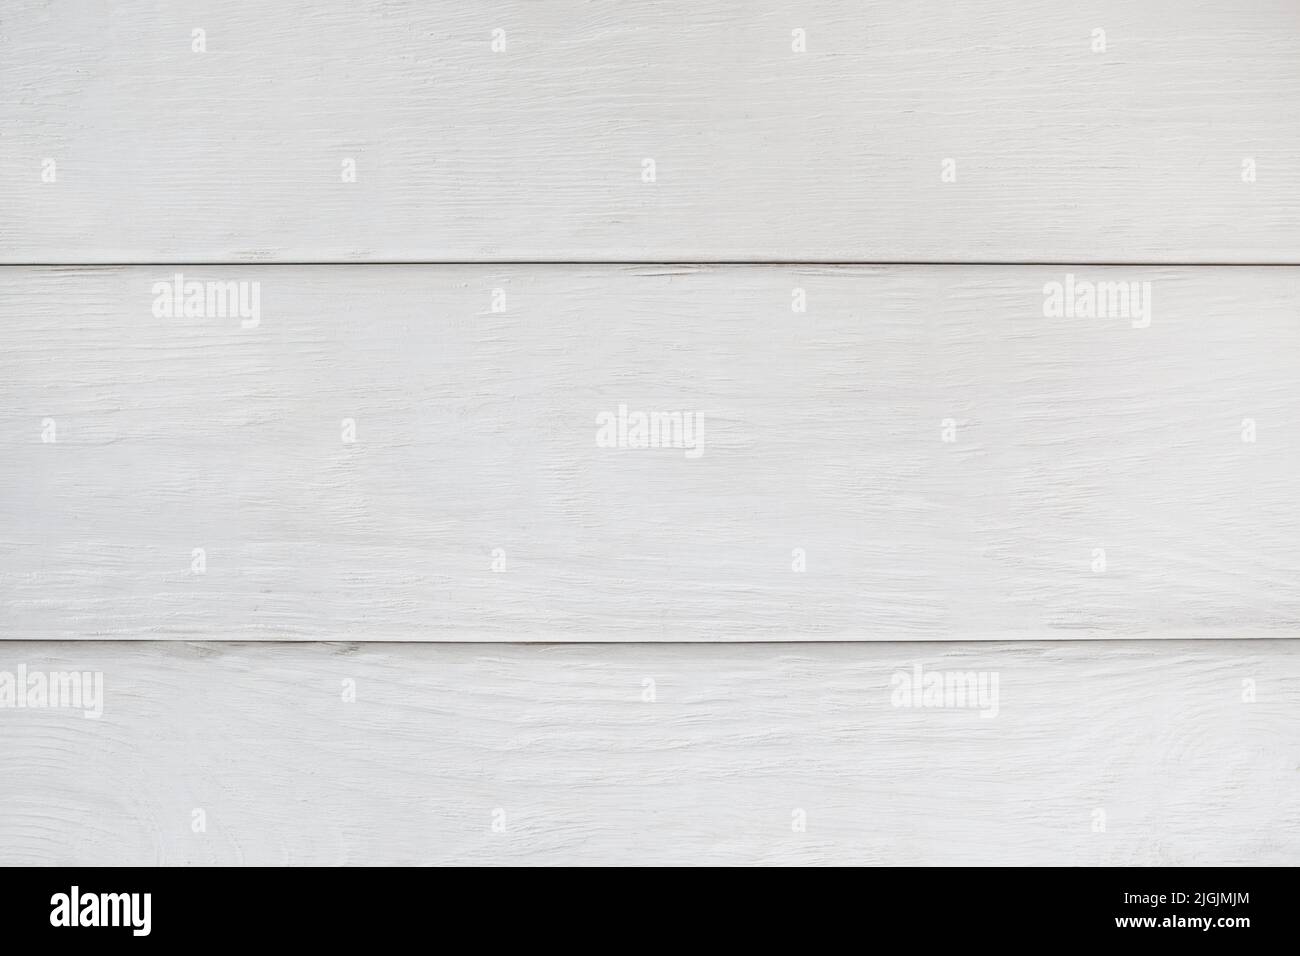 Fond de planches en bois blanc, espace libre Banque D'Images